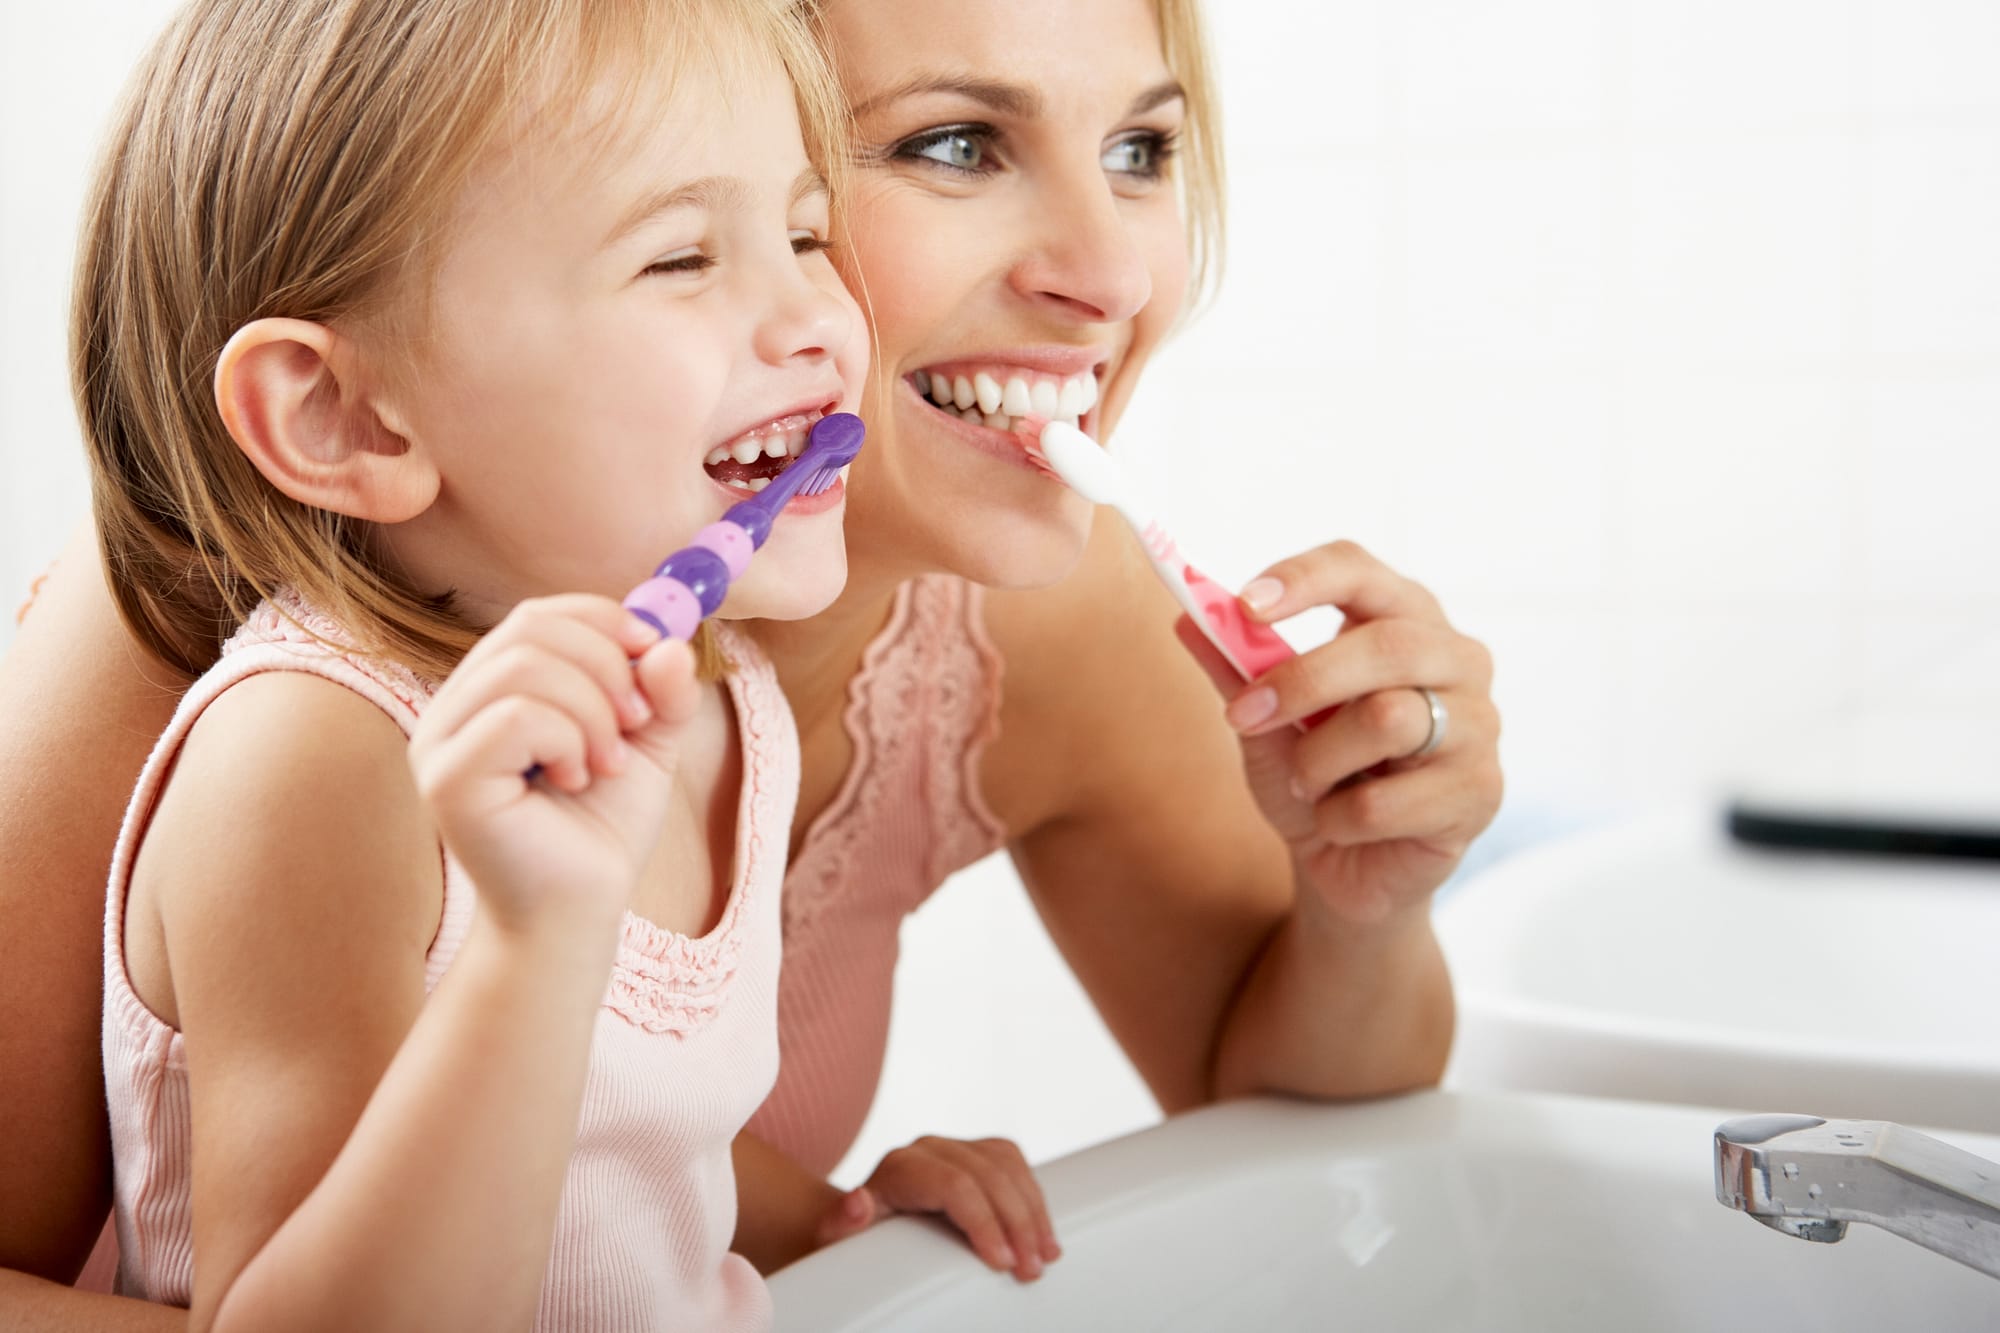 Salud dental en niños